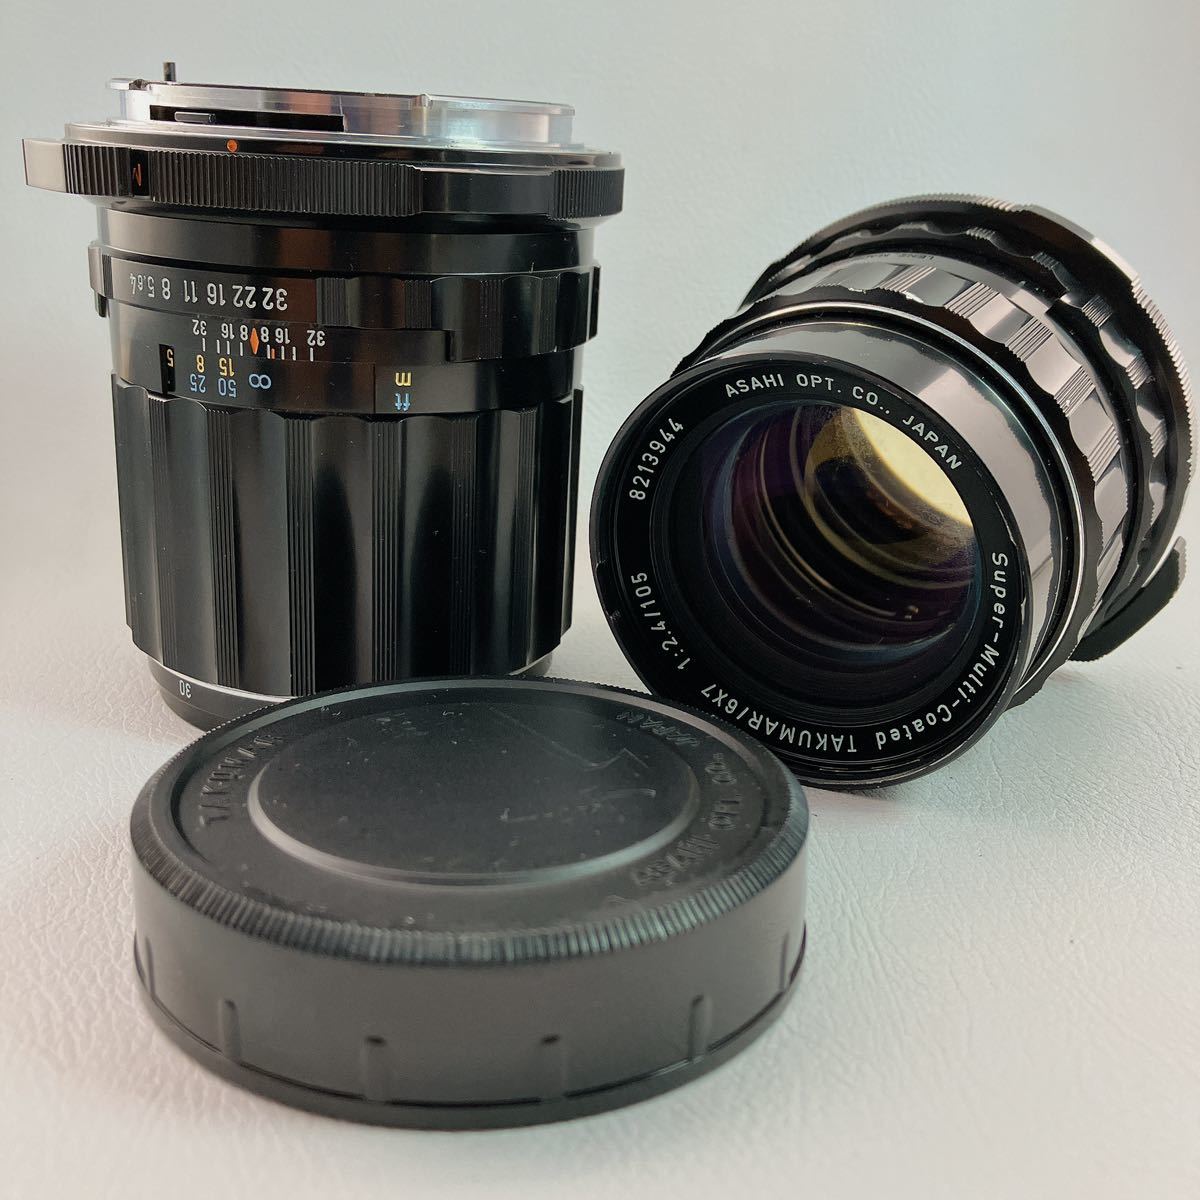 pentax 6x7 s-m-c takumar レンズ F2.4 105mm macro F4 135mm 67マウント ペンタックス 中判カメラ用  単焦点レンズ